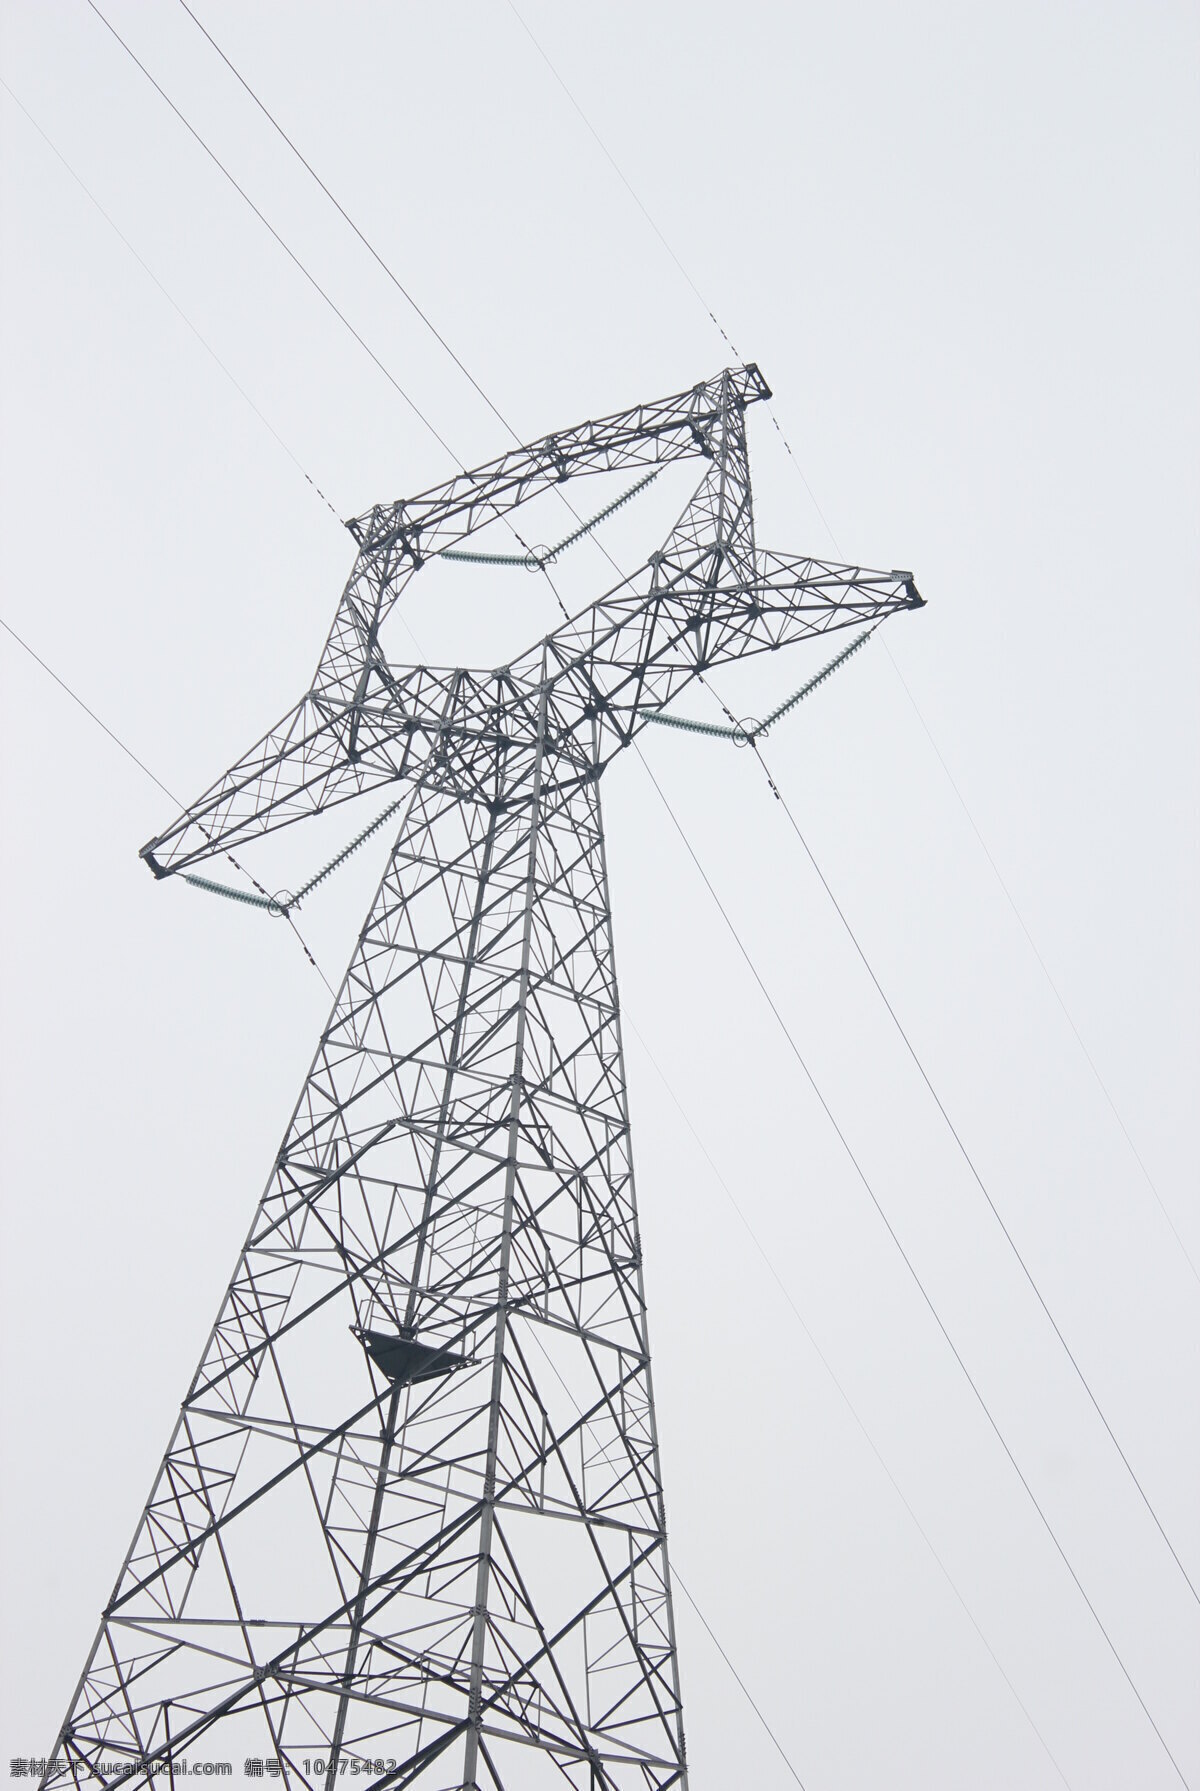 电线塔 电塔 电网 电线 高压线 塔架 发电 电力 工业生产 现代科技